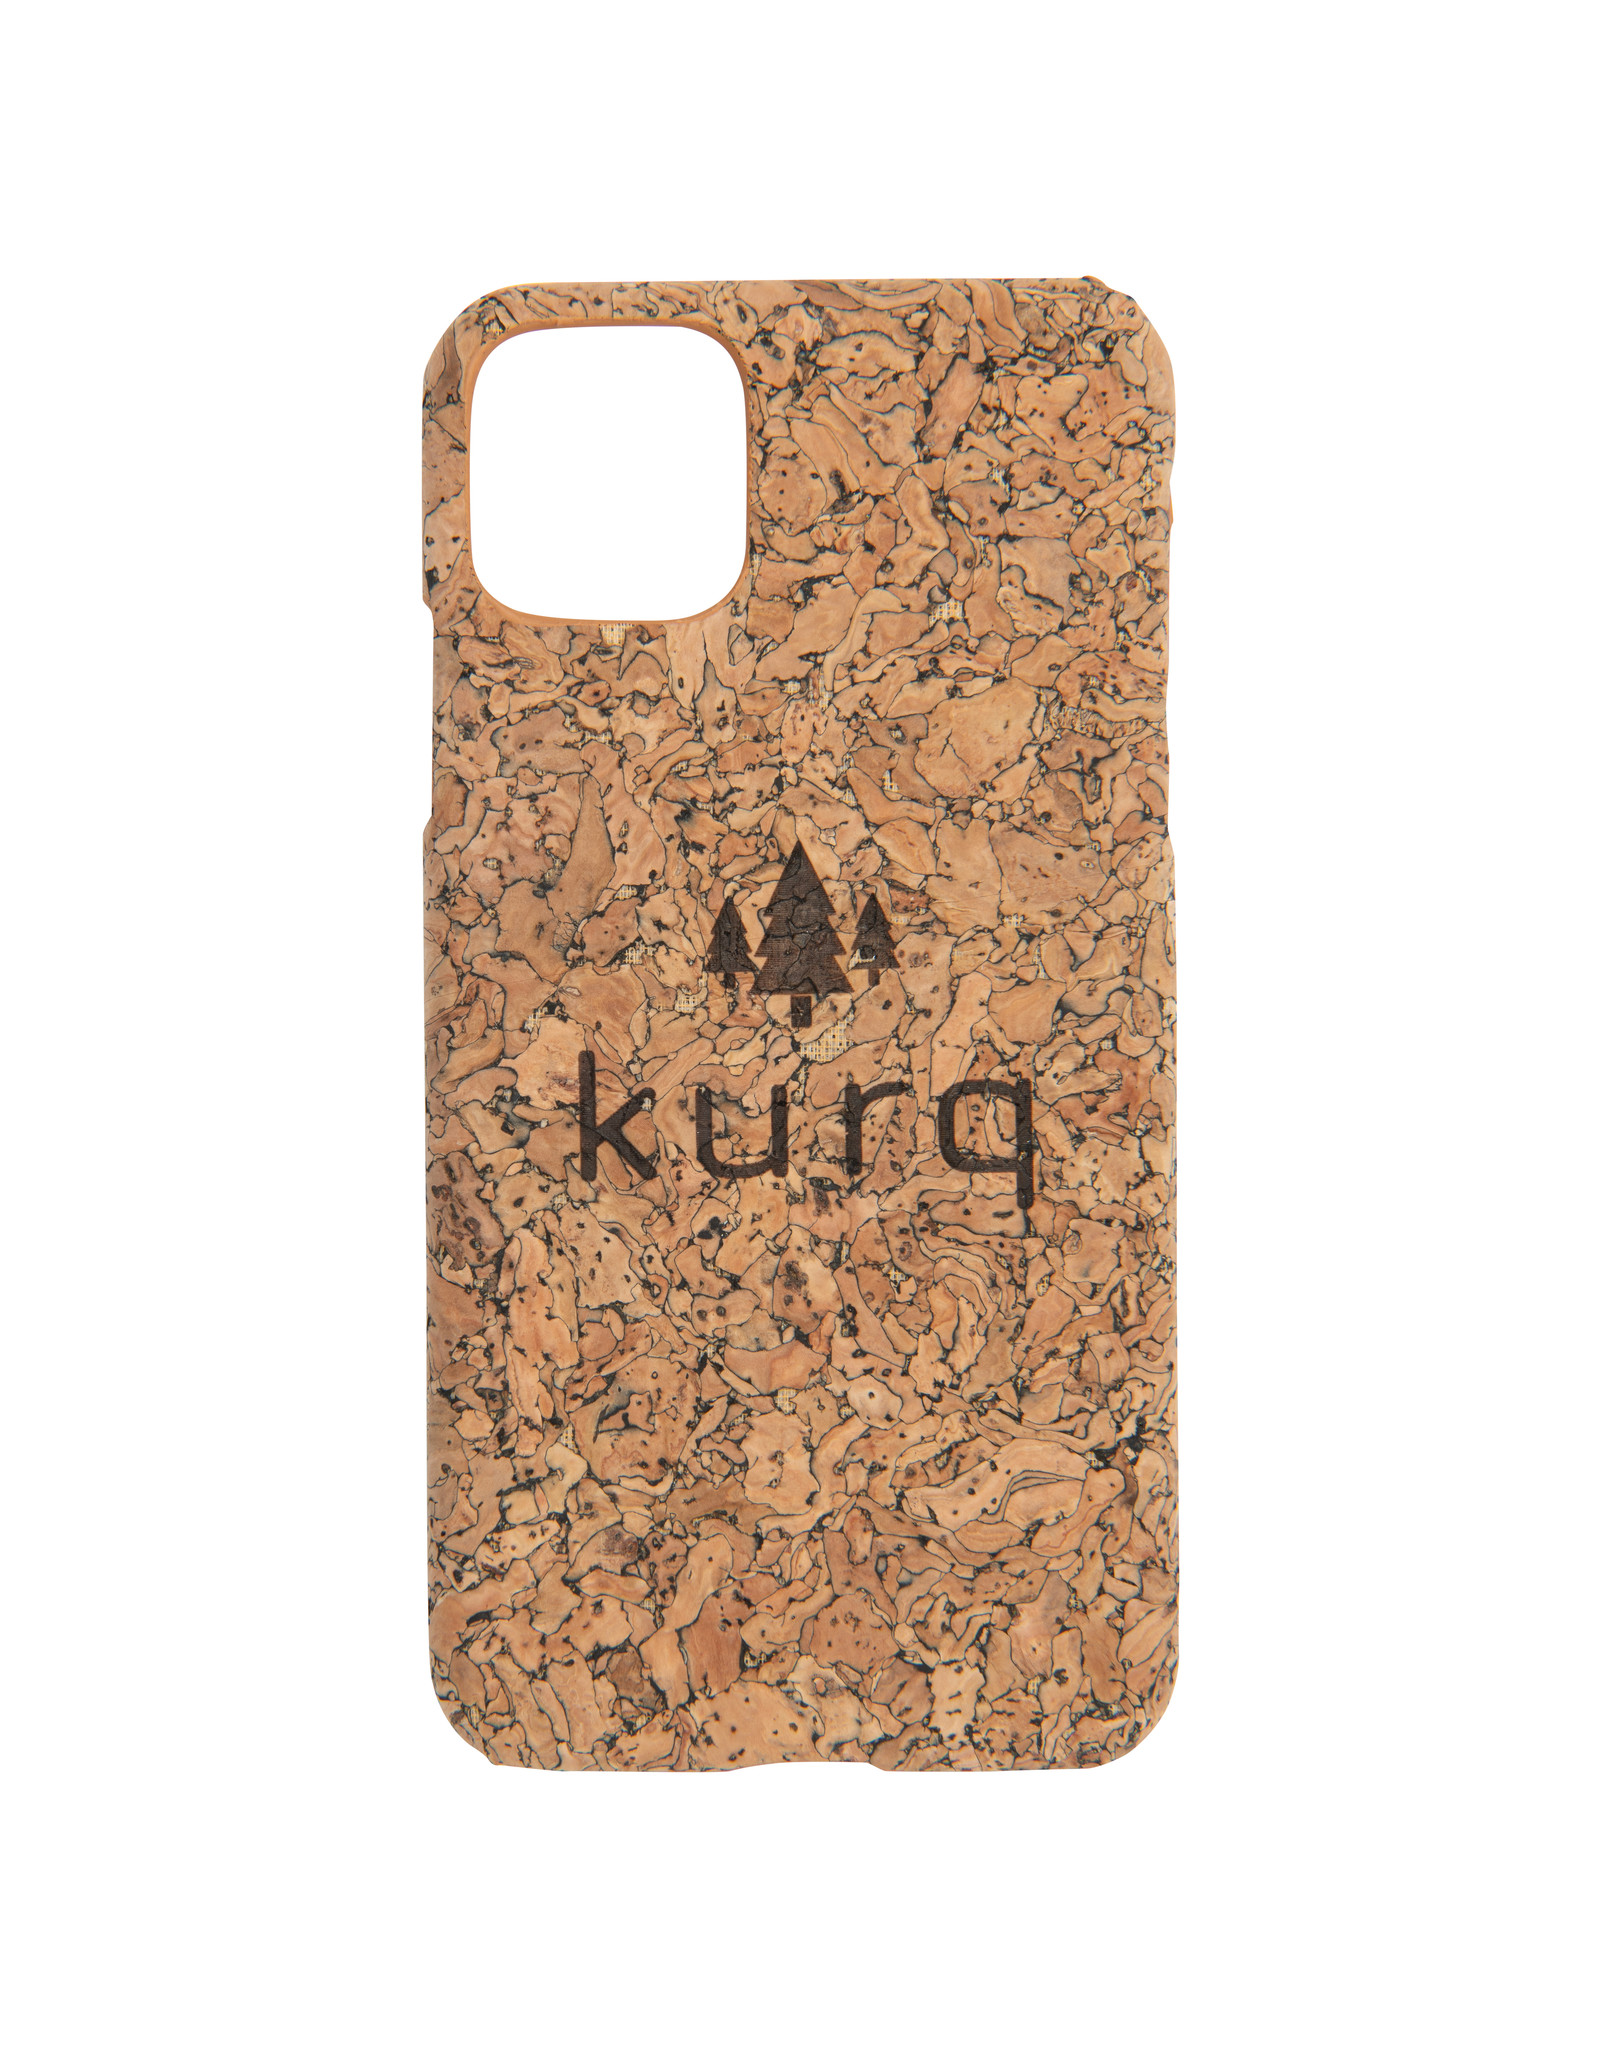 KURQ - Kurk telefoonhoesje voor iPhone 11 Pro Max